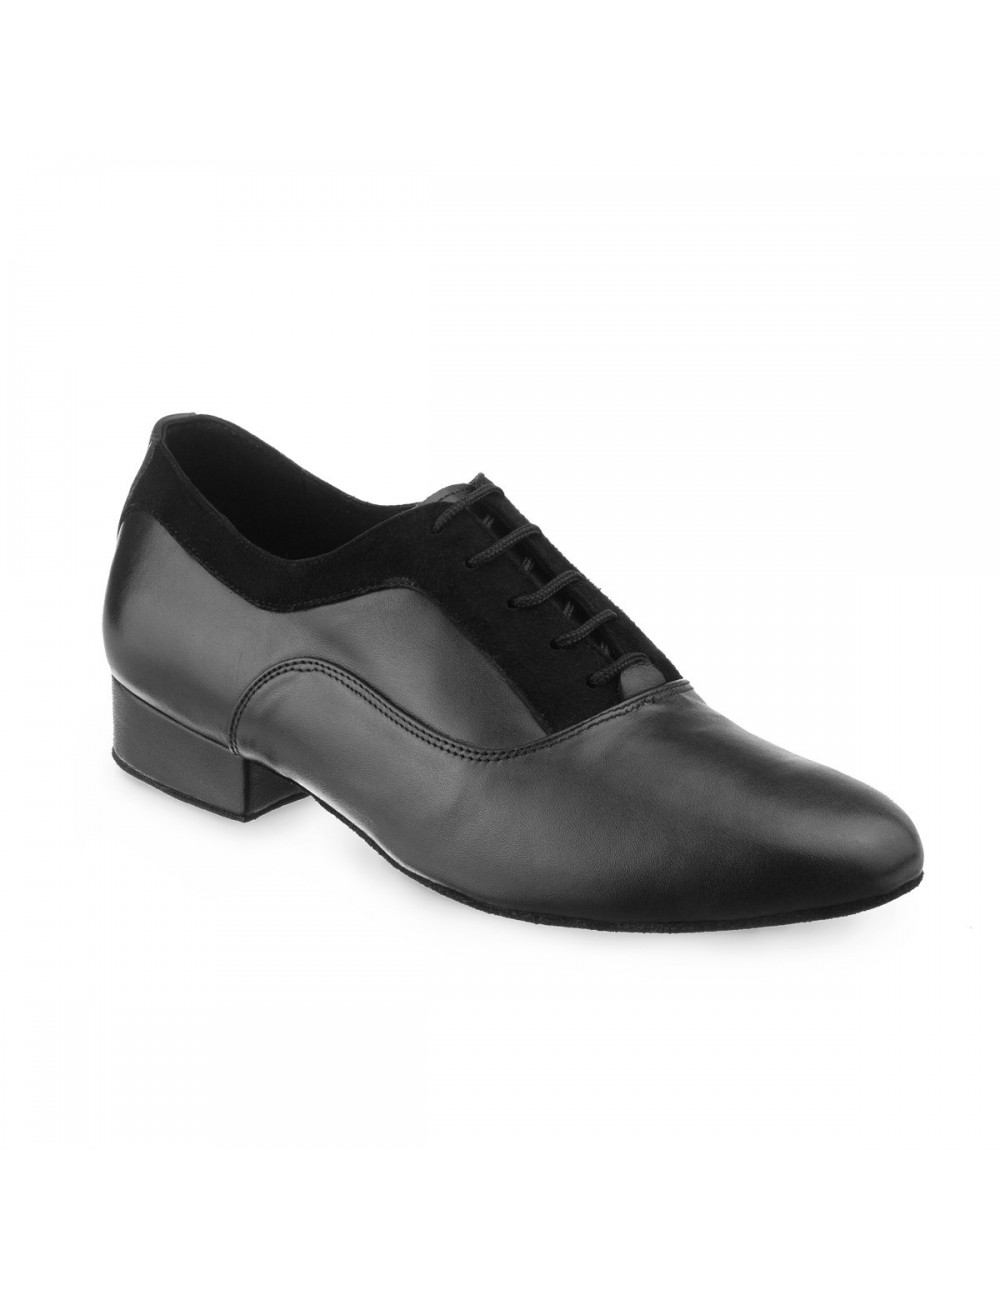 Zapatos de baile latino para hombre, calzado de salón, Tango